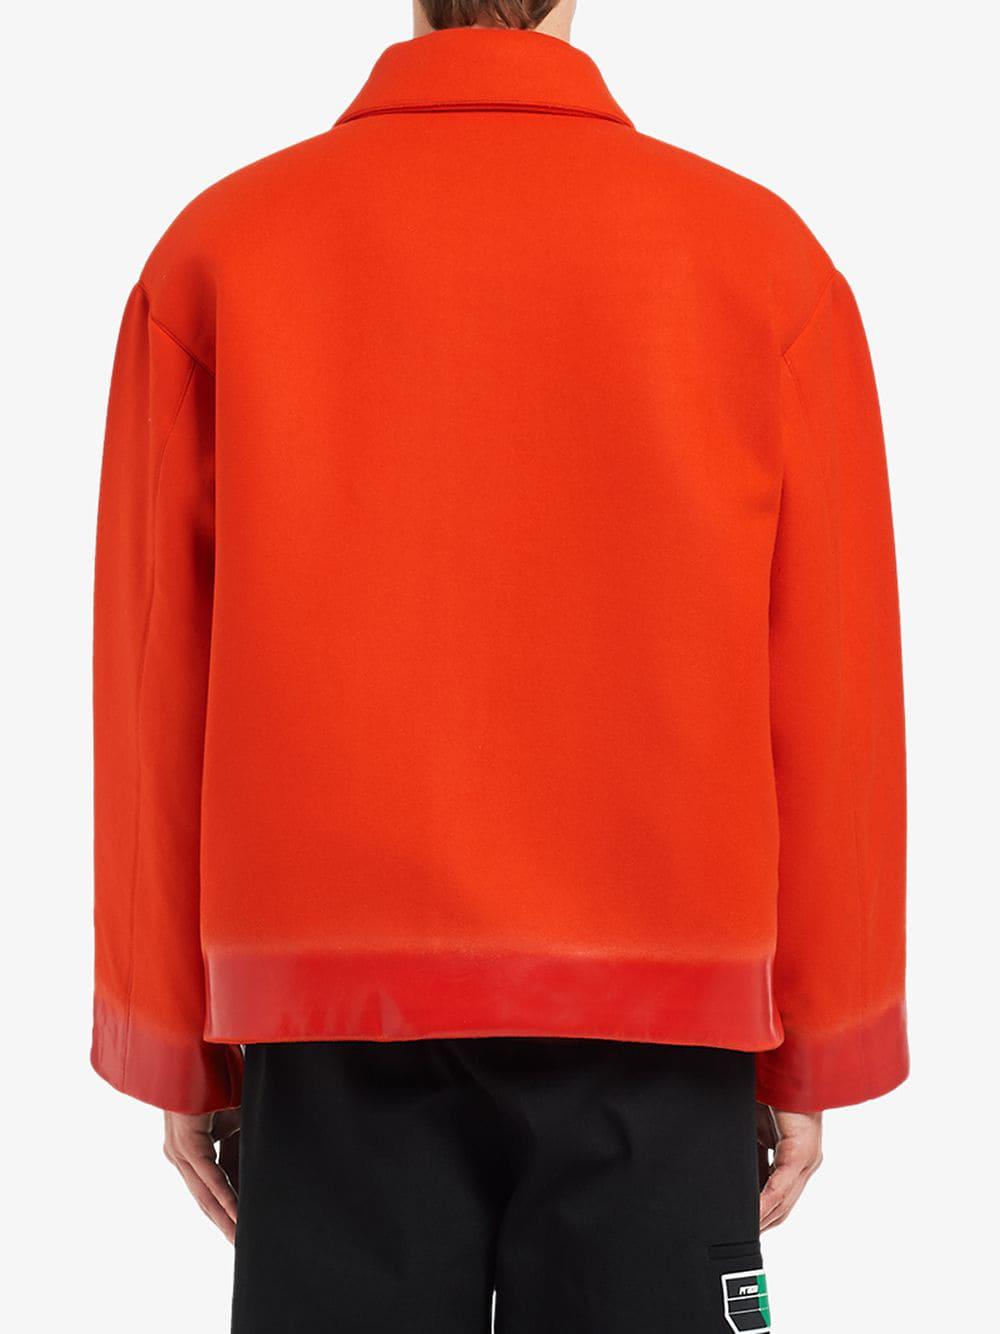 Prada Wool Logo Patch Shirt Jacket in Orange for Men - Lyst